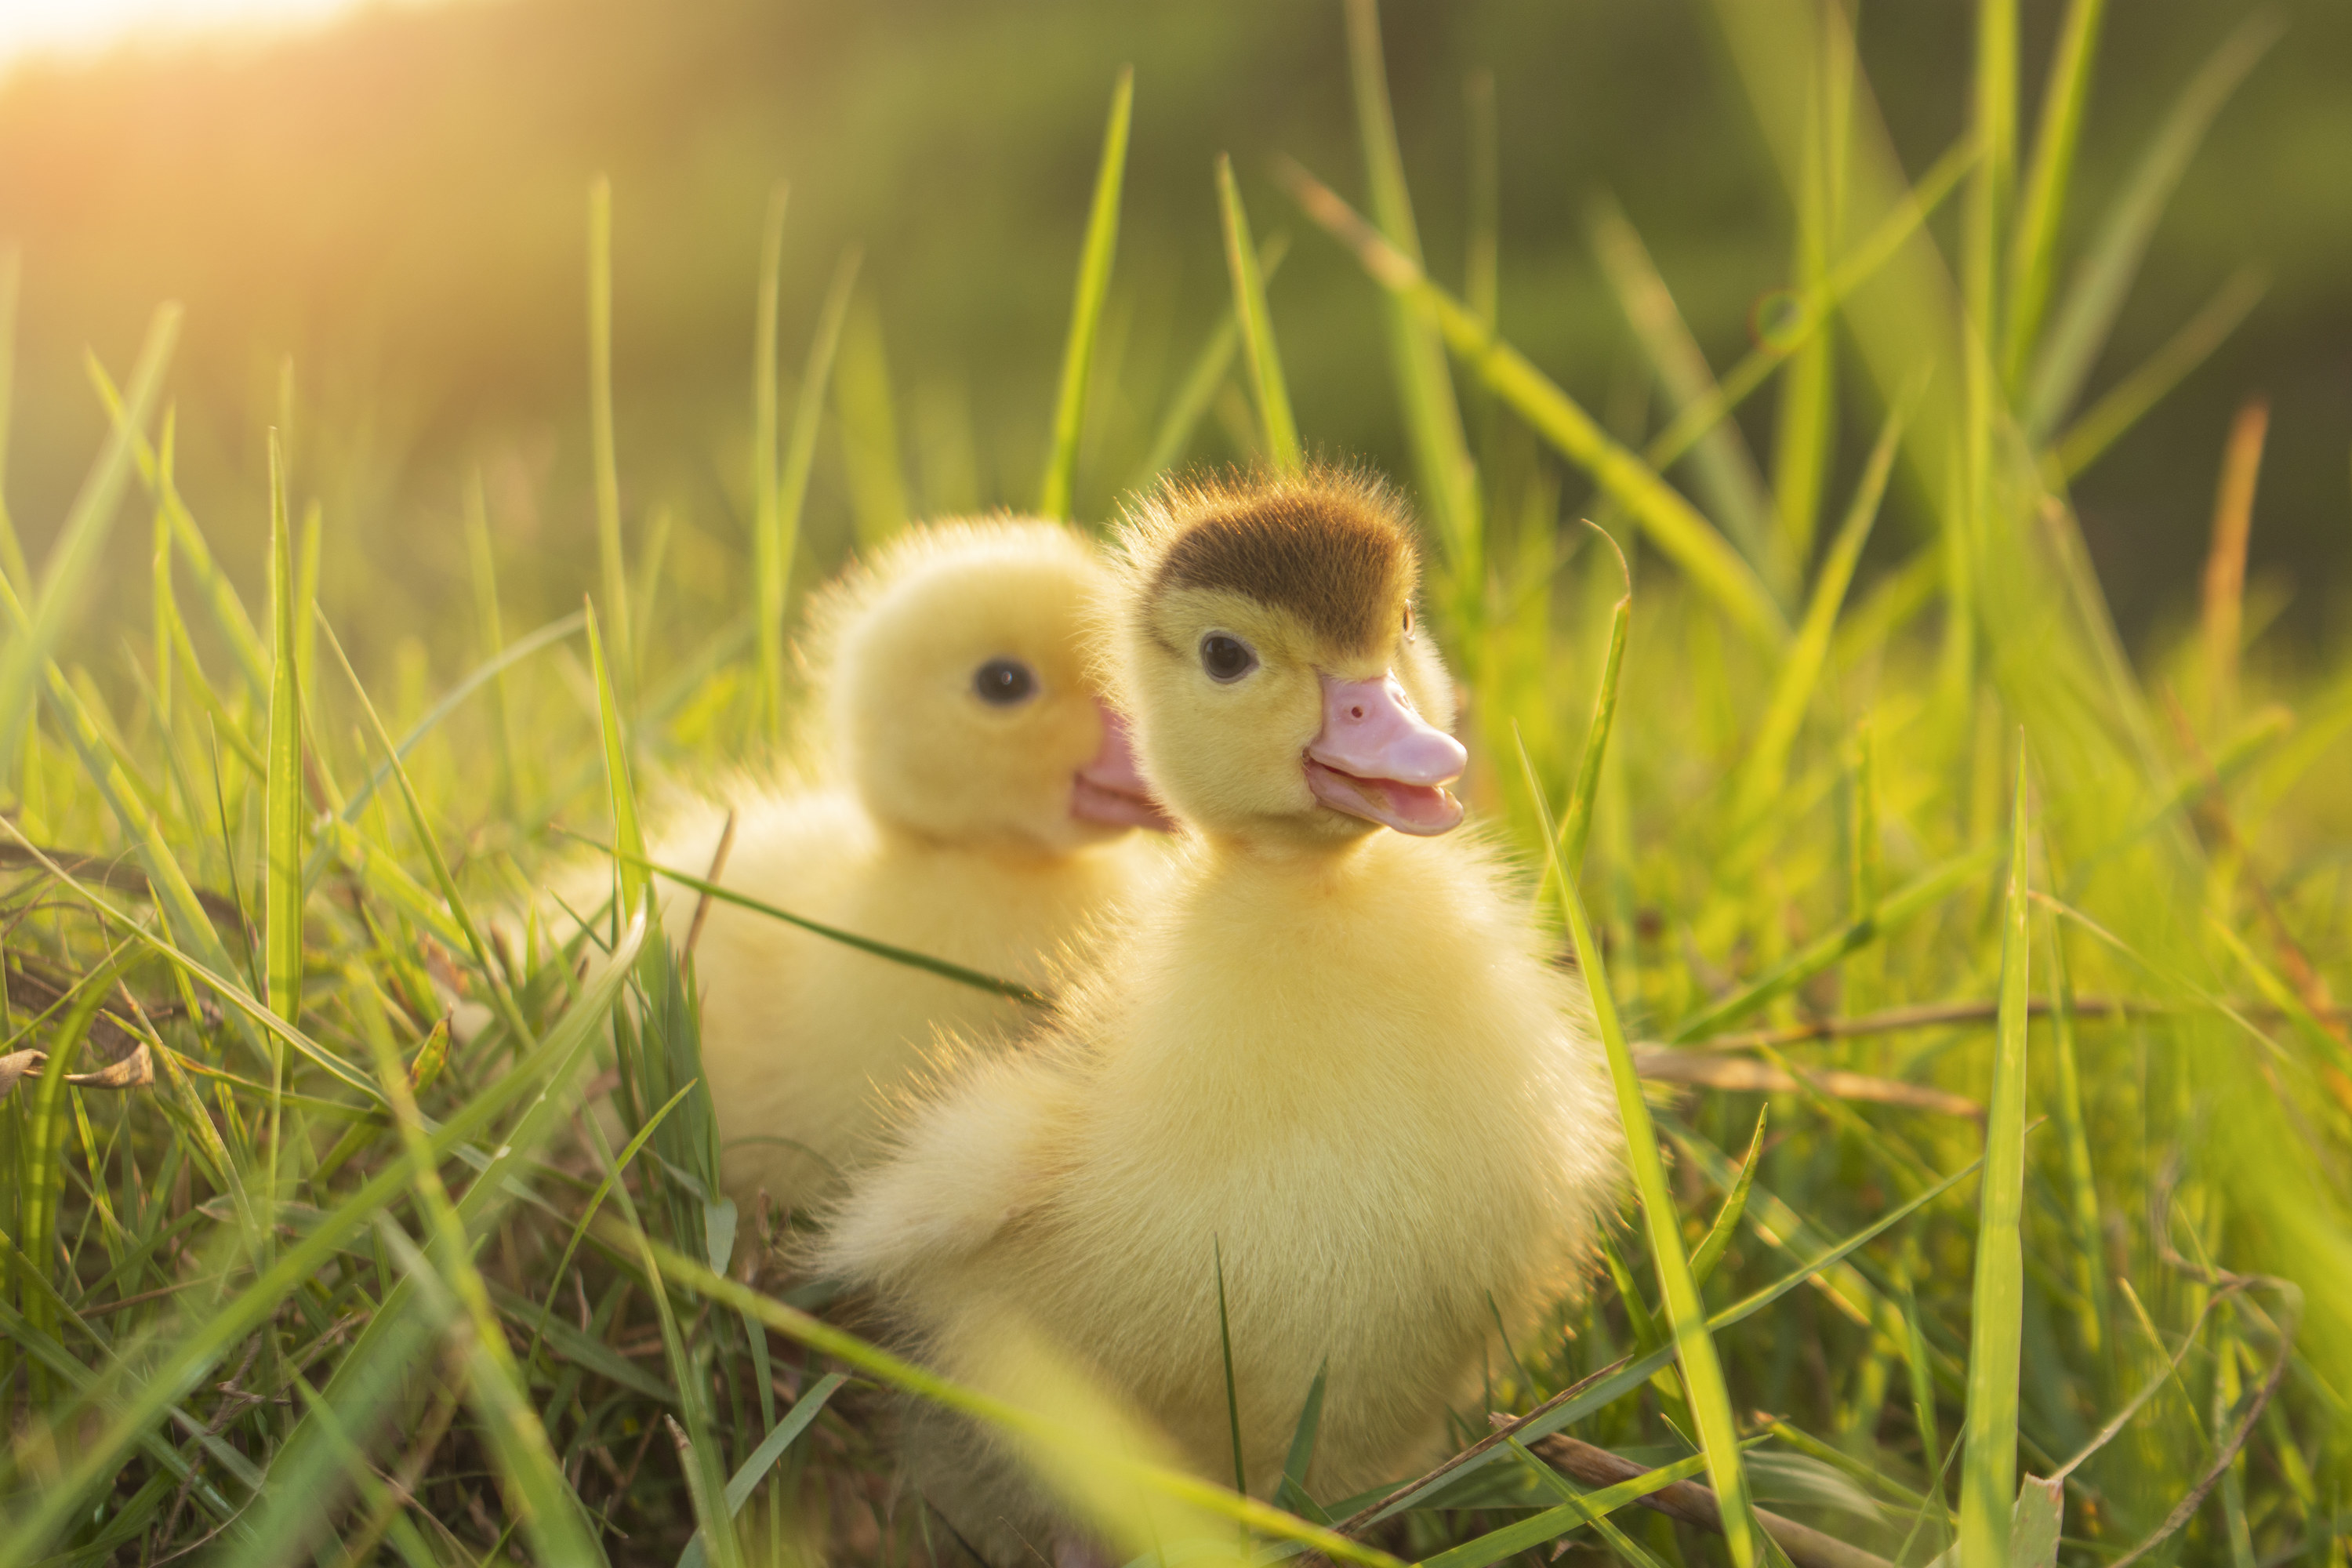 ducklings in a field